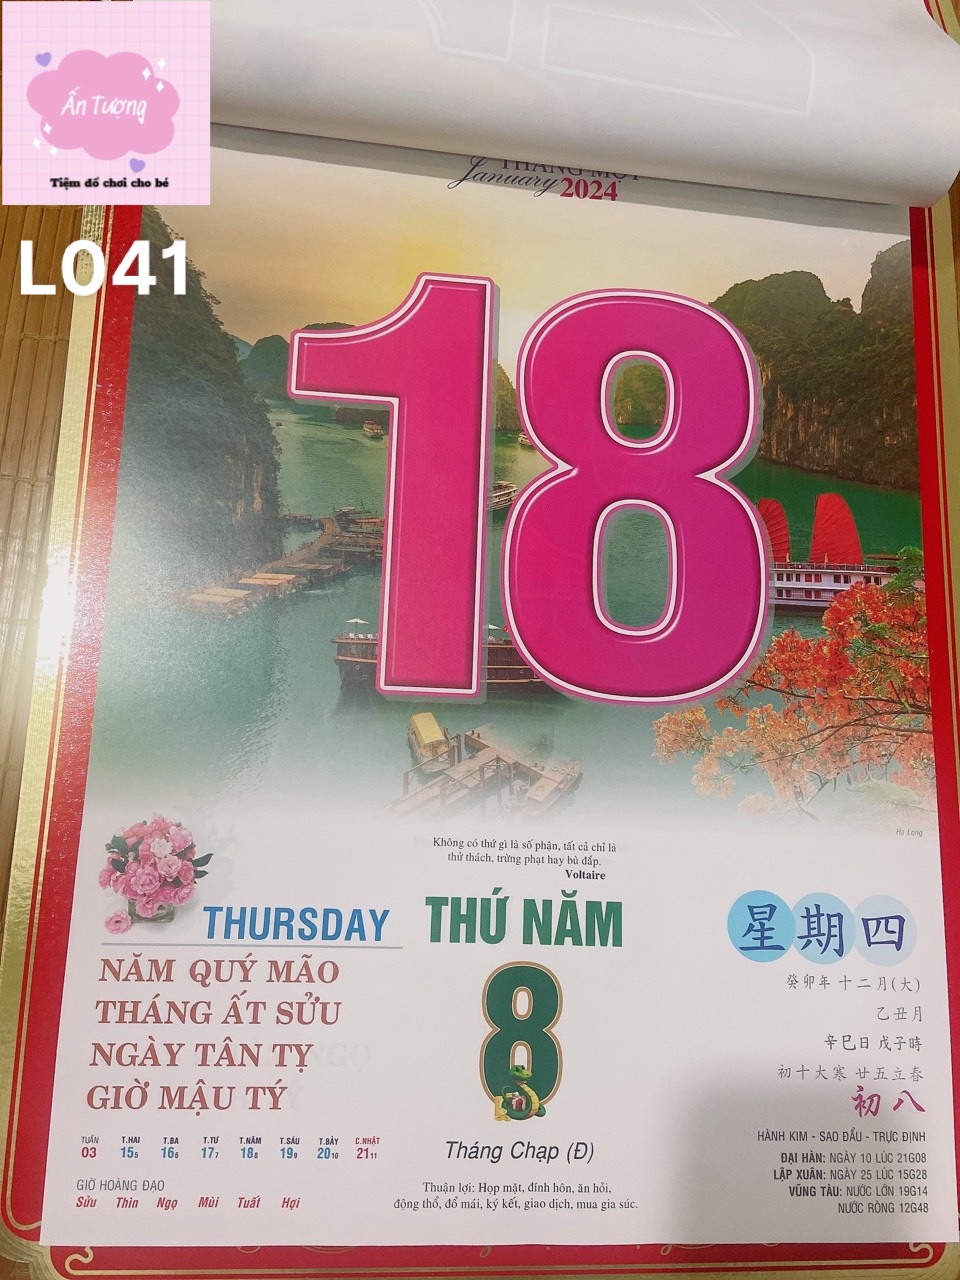 (Mua lịch tặng lịch) Bộ lịch Giáp Thìn 2024 - Lịch Bloc Siêu Cực Đại (38x53 cm)- chủ đề " Việt Nam Thanh Bình”